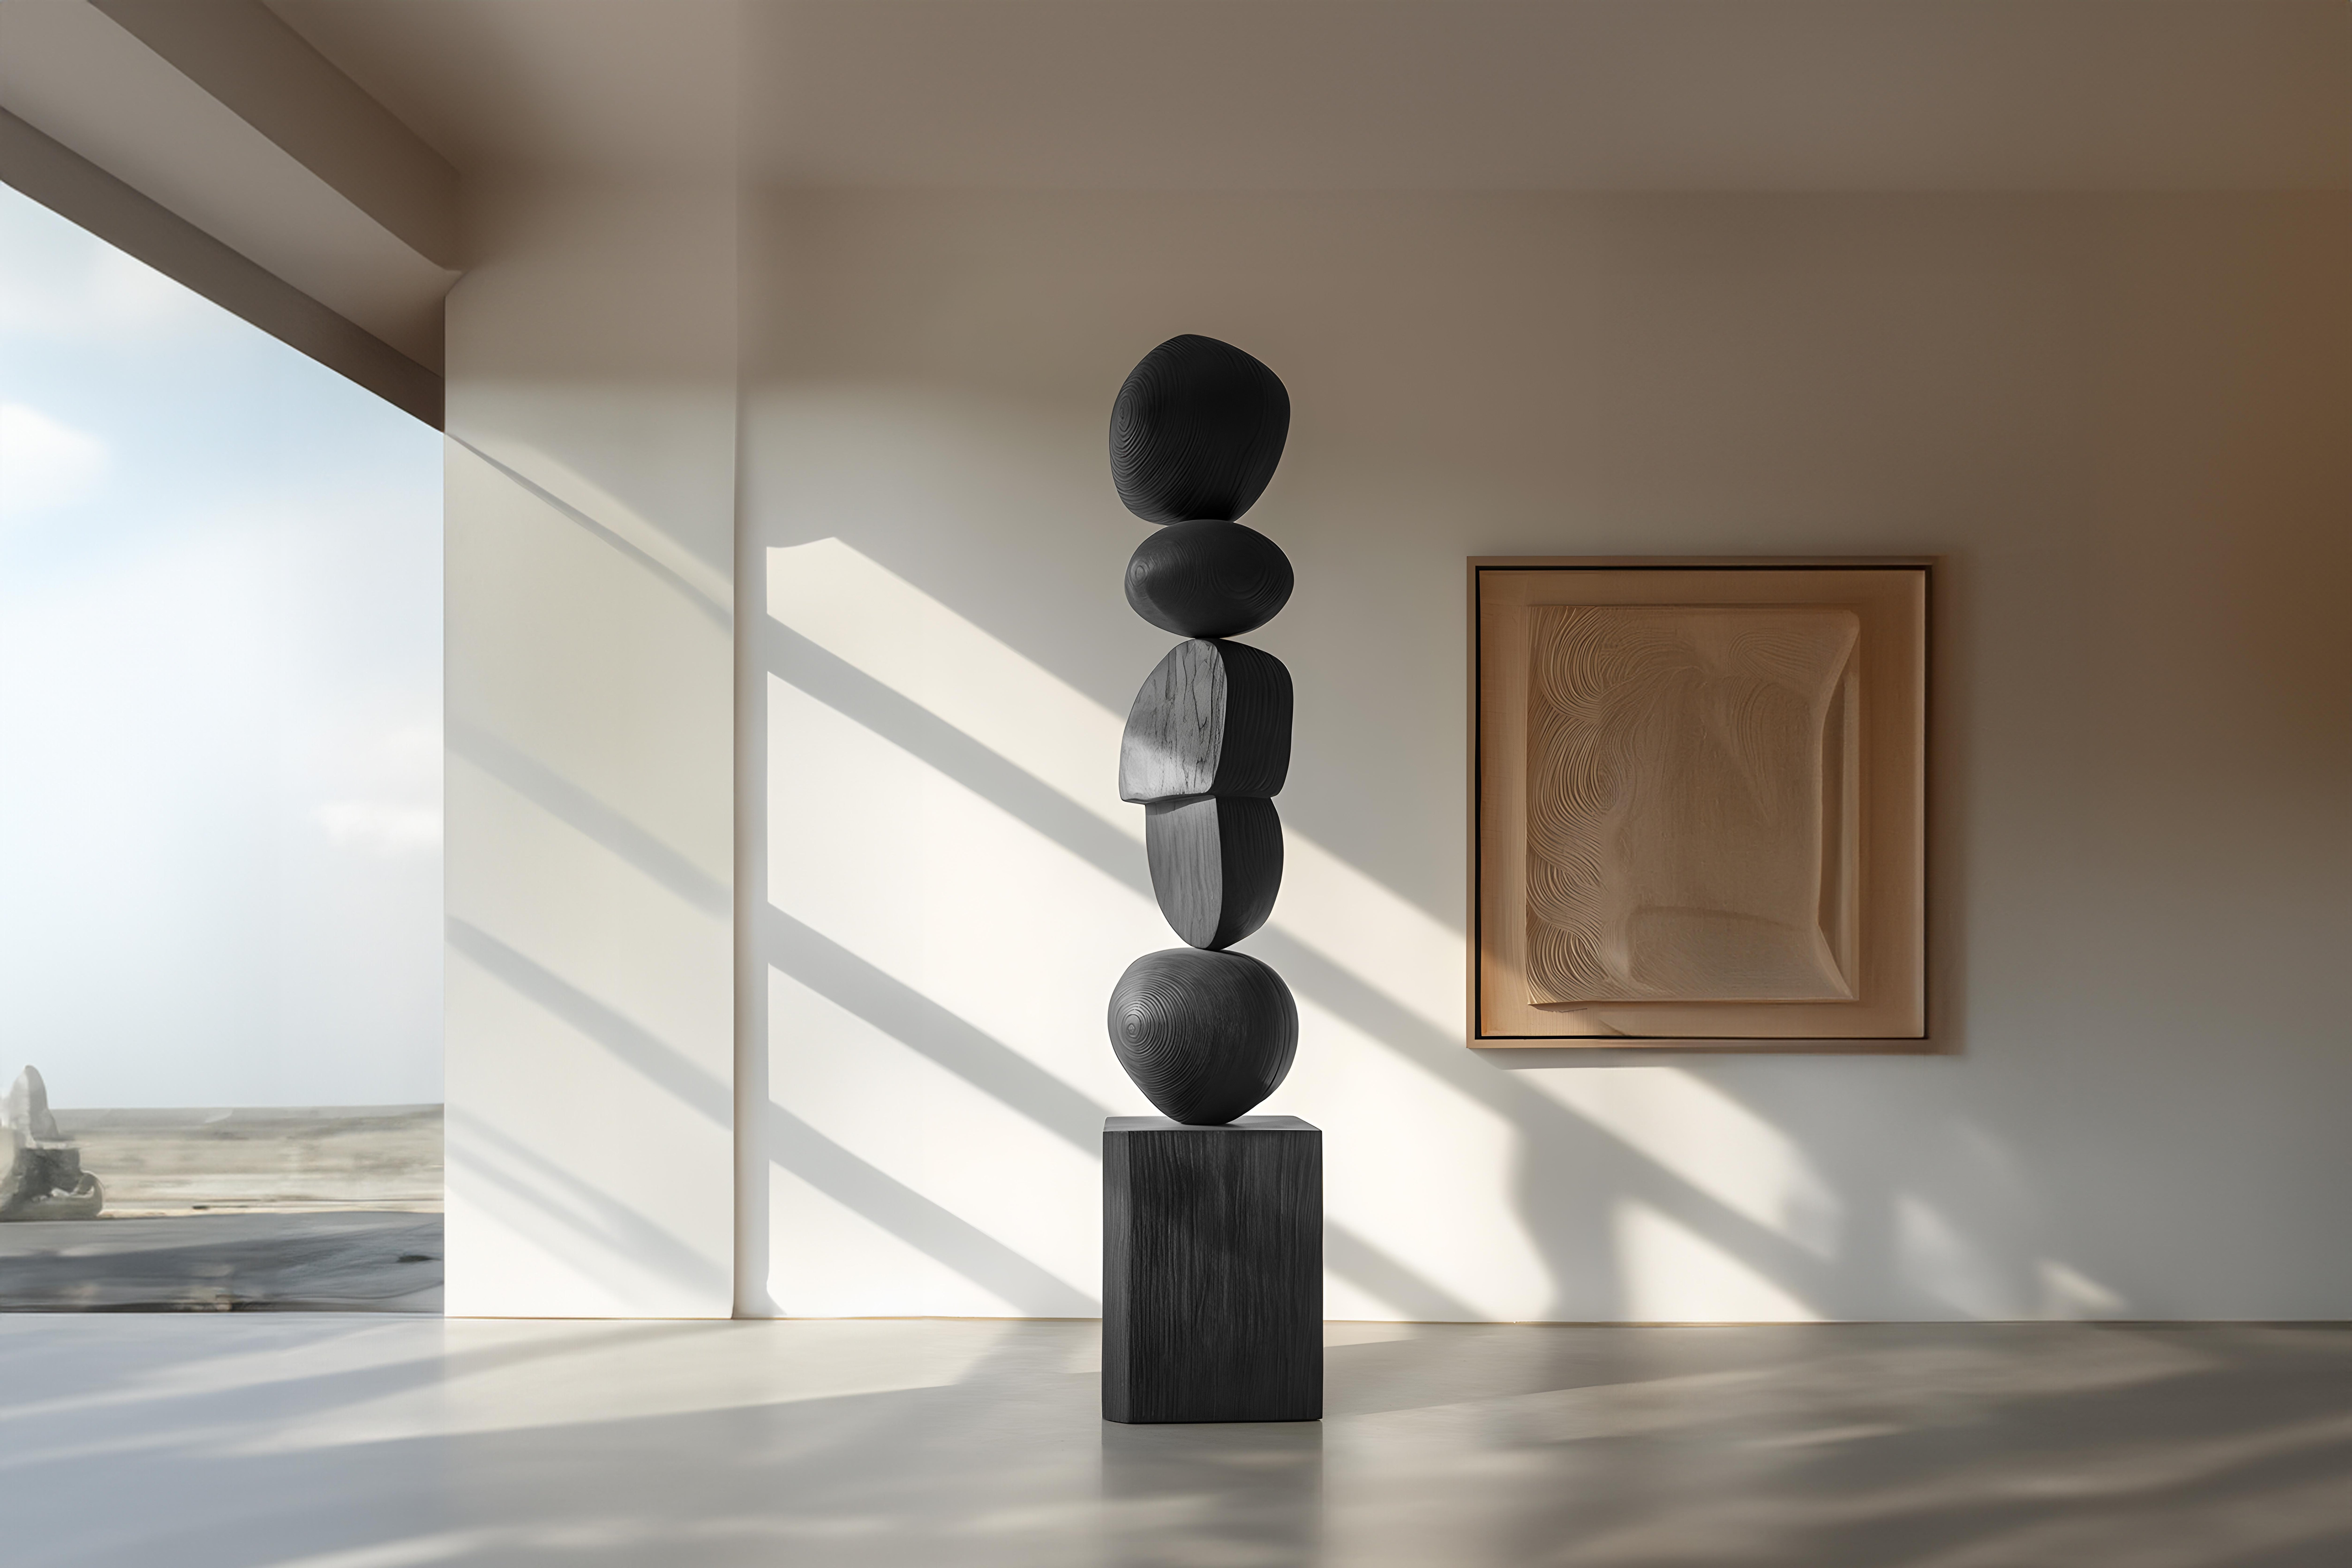 Elegantes, dunkles, abstraktes Design aus schwarzem Massivholz von Escalona, Still Stand No96

--

Die stehenden Holzskulpturen von Joel Escalona sind Objekte von rauer Schönheit und heiterer Anmut. Jedes einzelne ist ein Zeugnis für die Kraft des